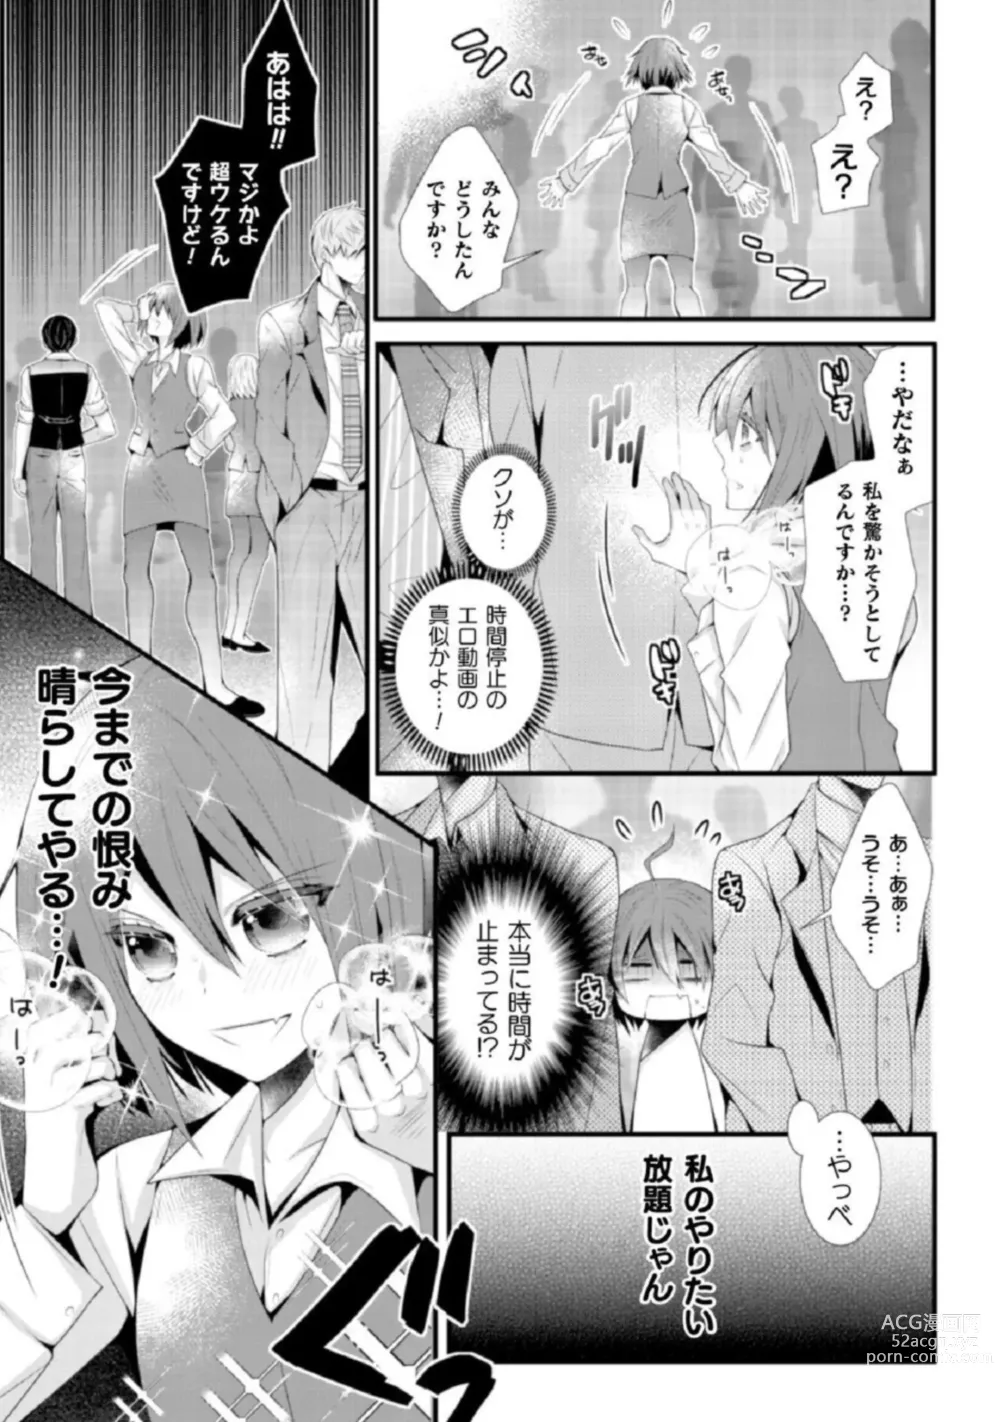 Page 12 of manga Shokorashukureansorojī Ibitsuai ～ Yandere Kareshi no Omoi ai ni Kakowarete ～Vol.2